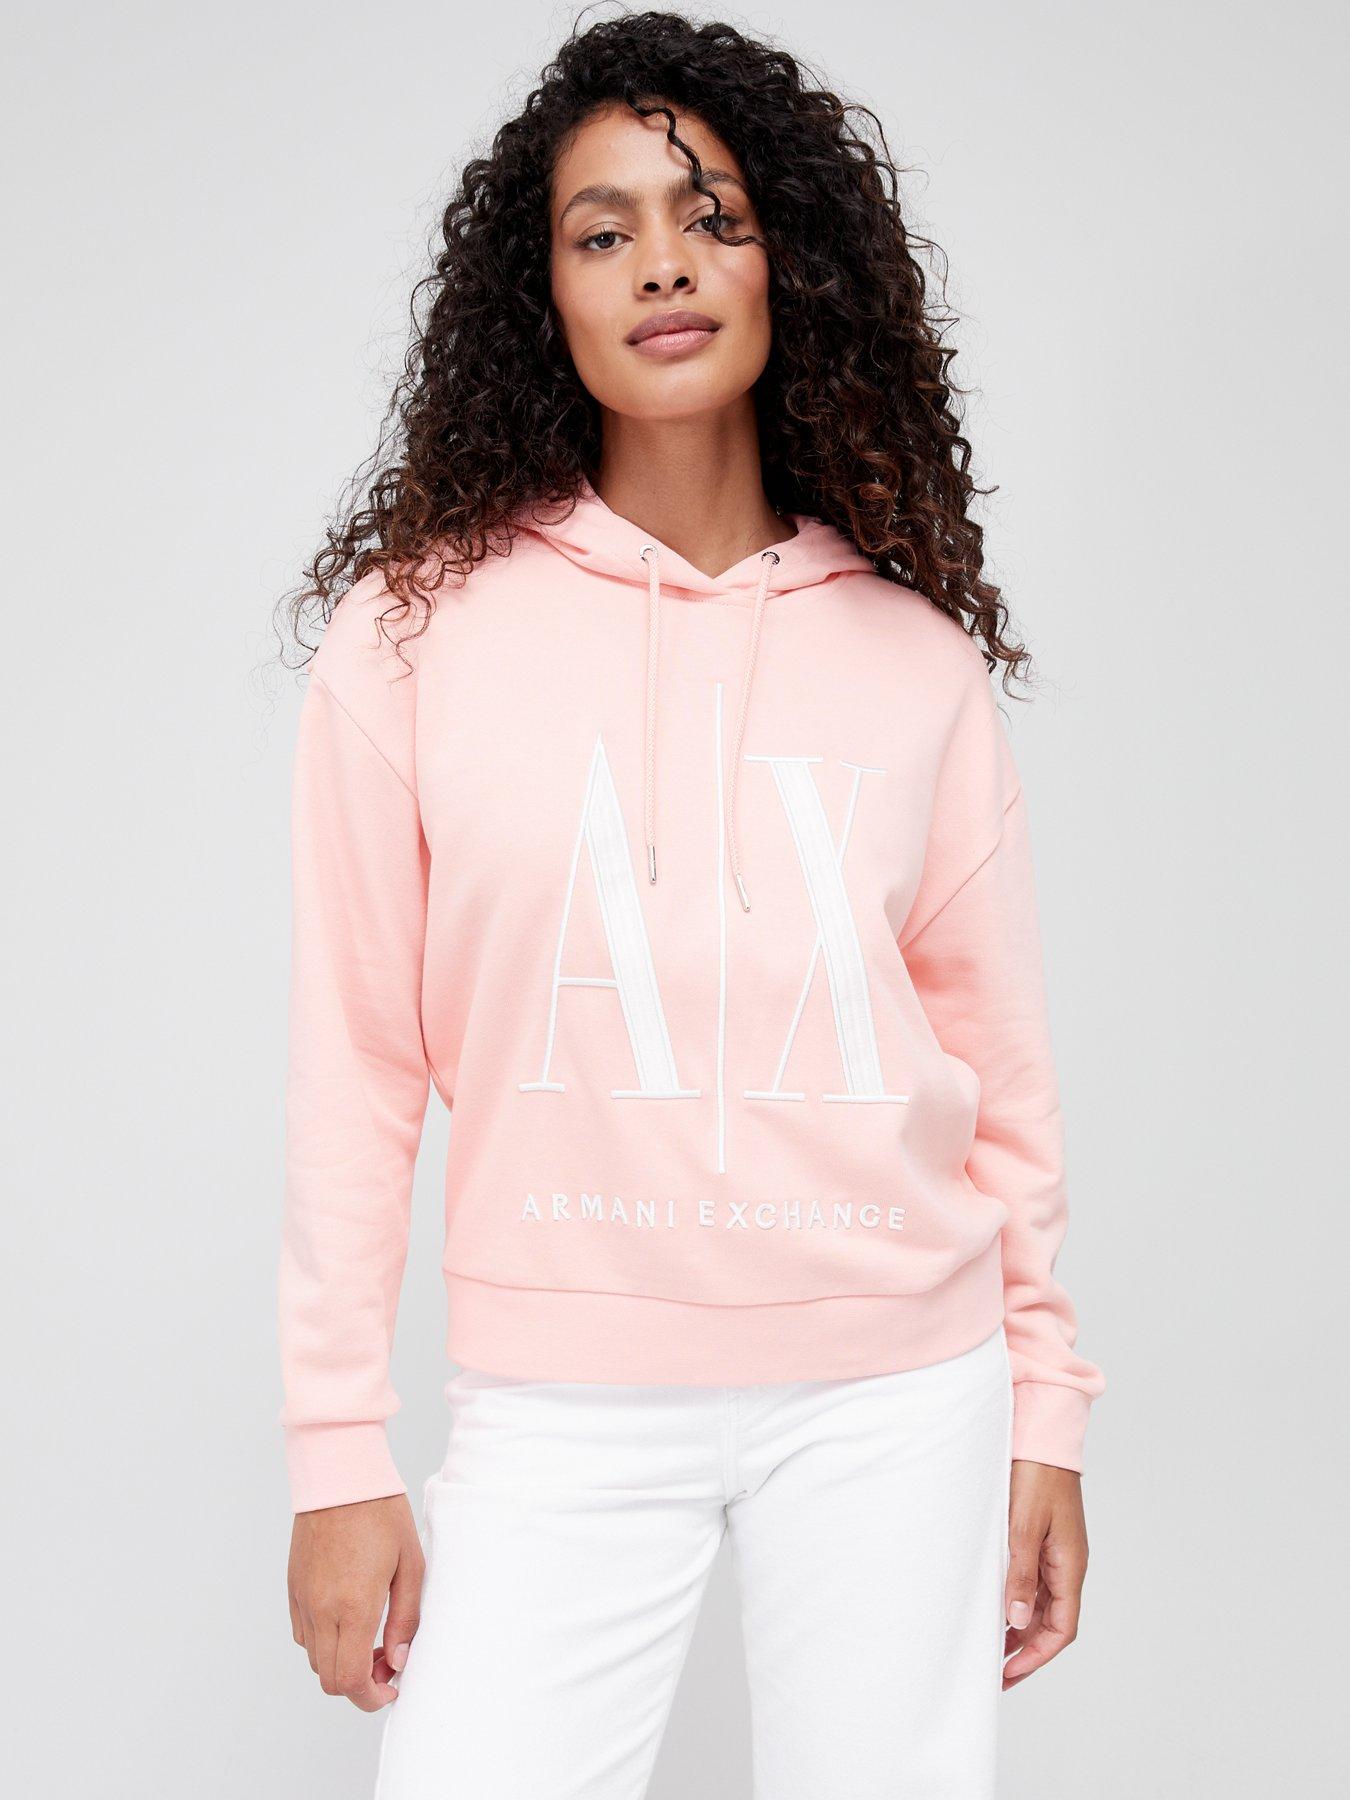 Armani exchange | Hoodies & sweatshirts | Women | Very Ireland